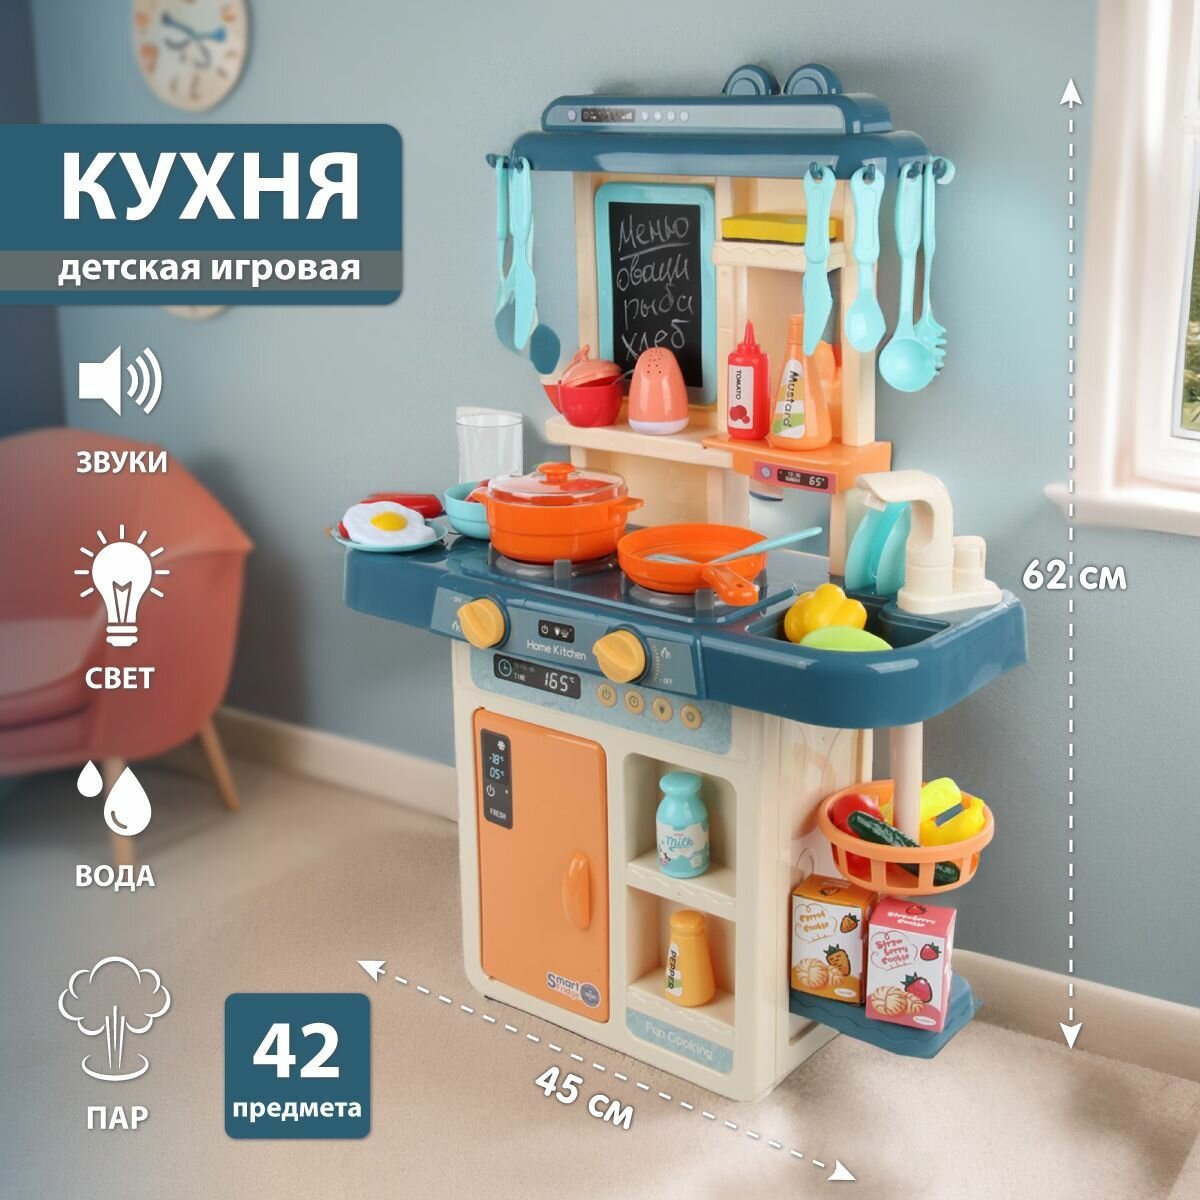 Детская игровая кухня со светом и звуком 62 см, 42 предмета, Veld Co / Игрушечная кухонная бытовая техника с водой и паром